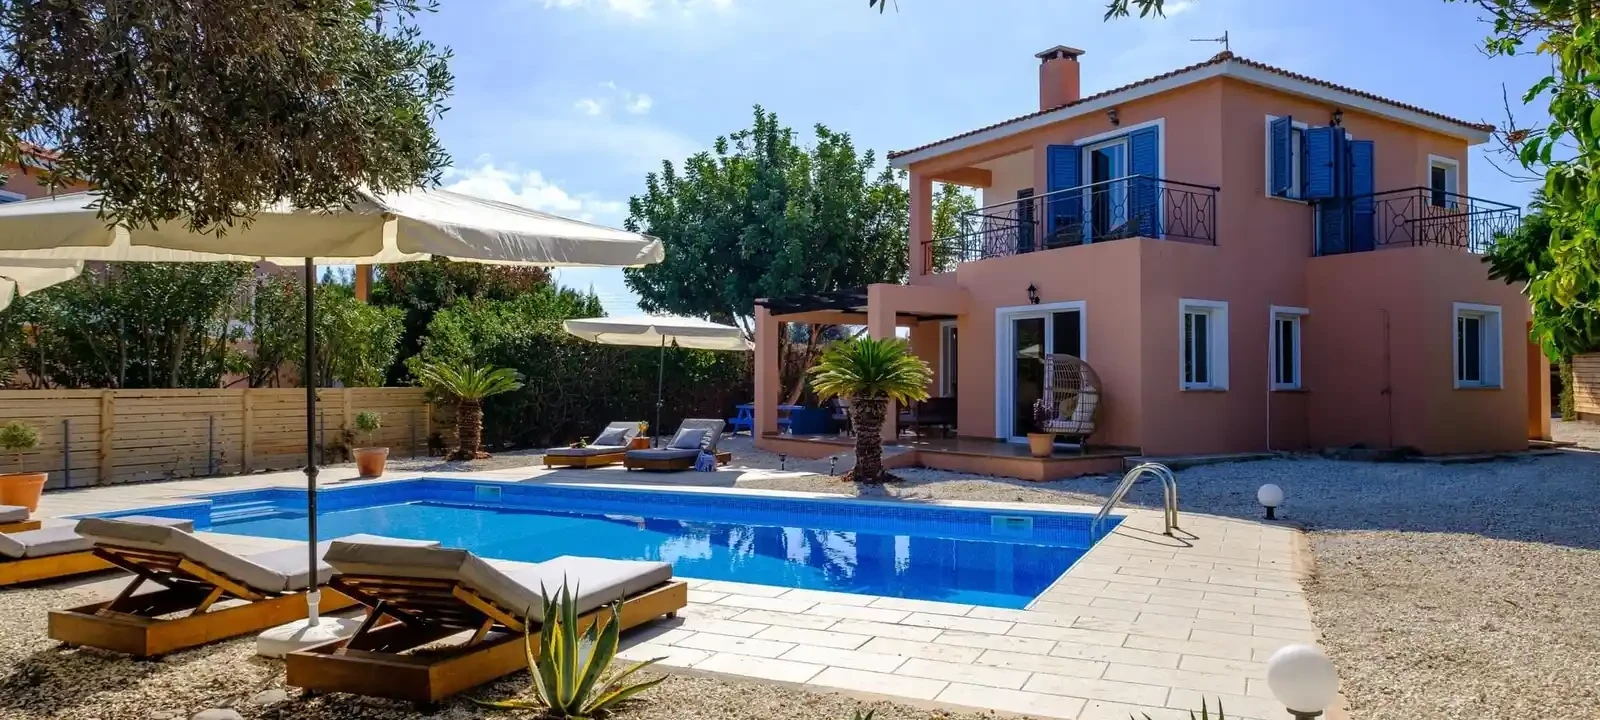 3-bedroom villa to rent €2.000, image 1